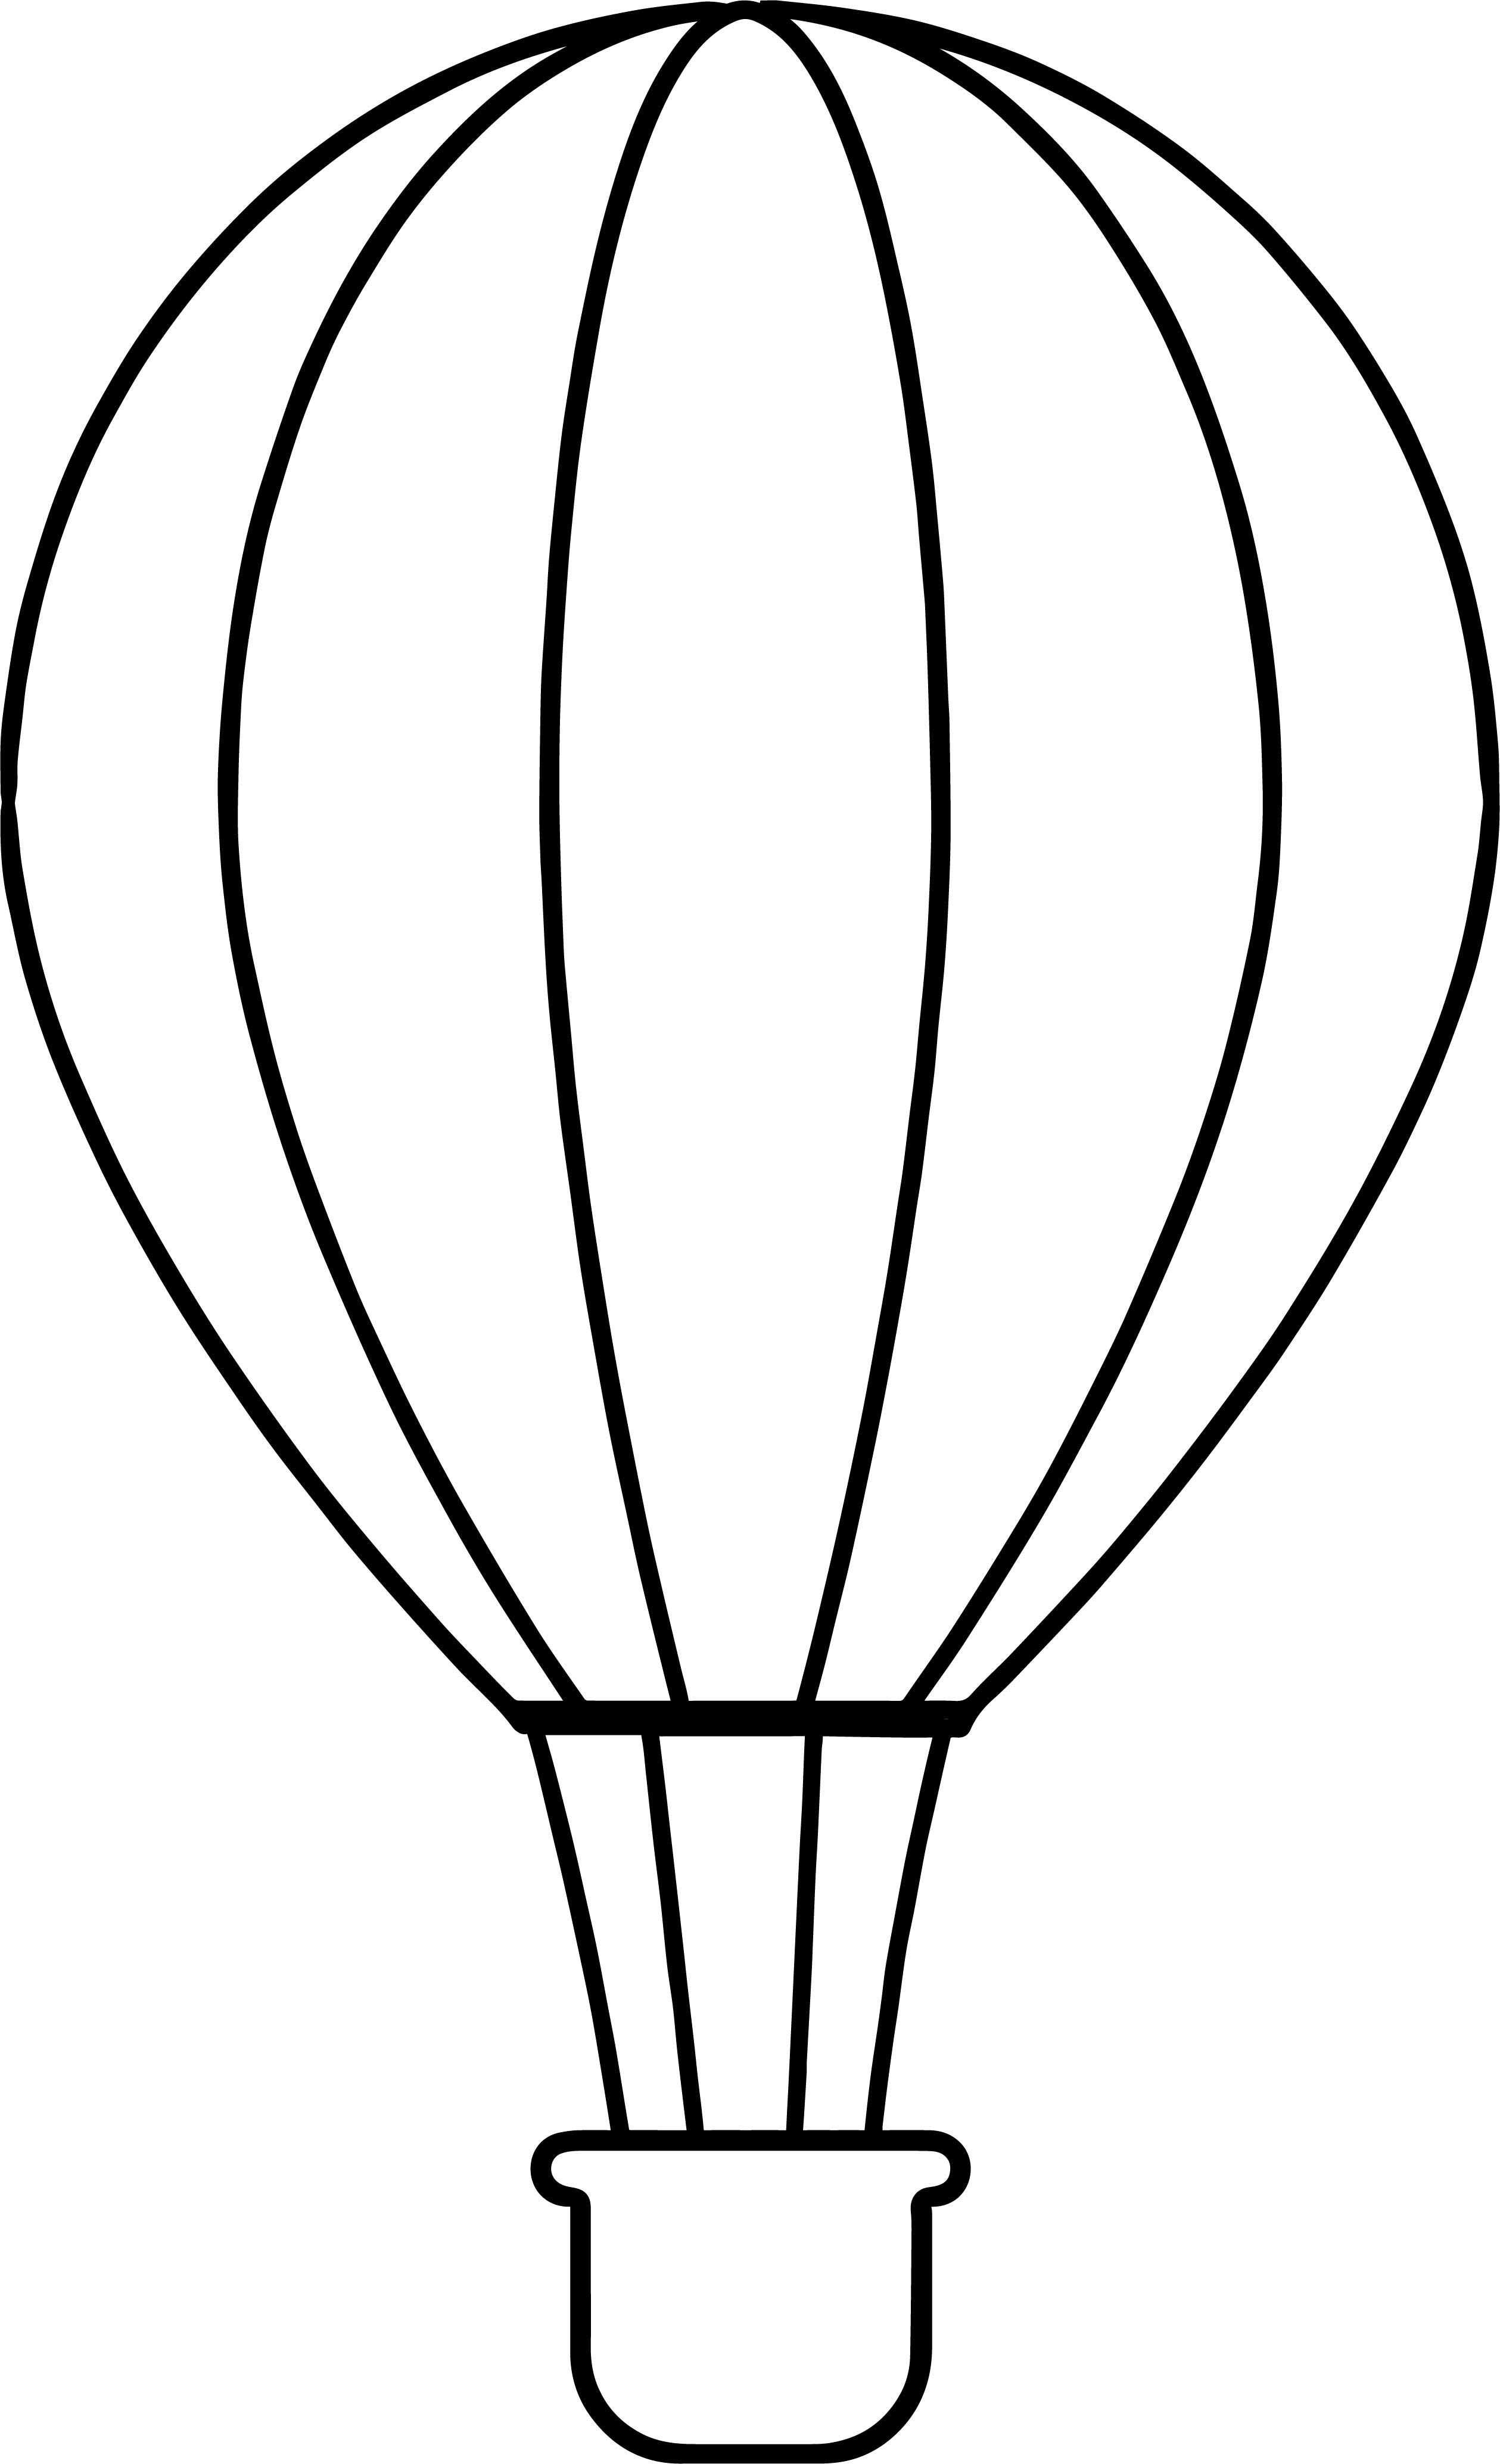 Подробно о том, как нарисовать воздушные шары. рисунок воздушного шара